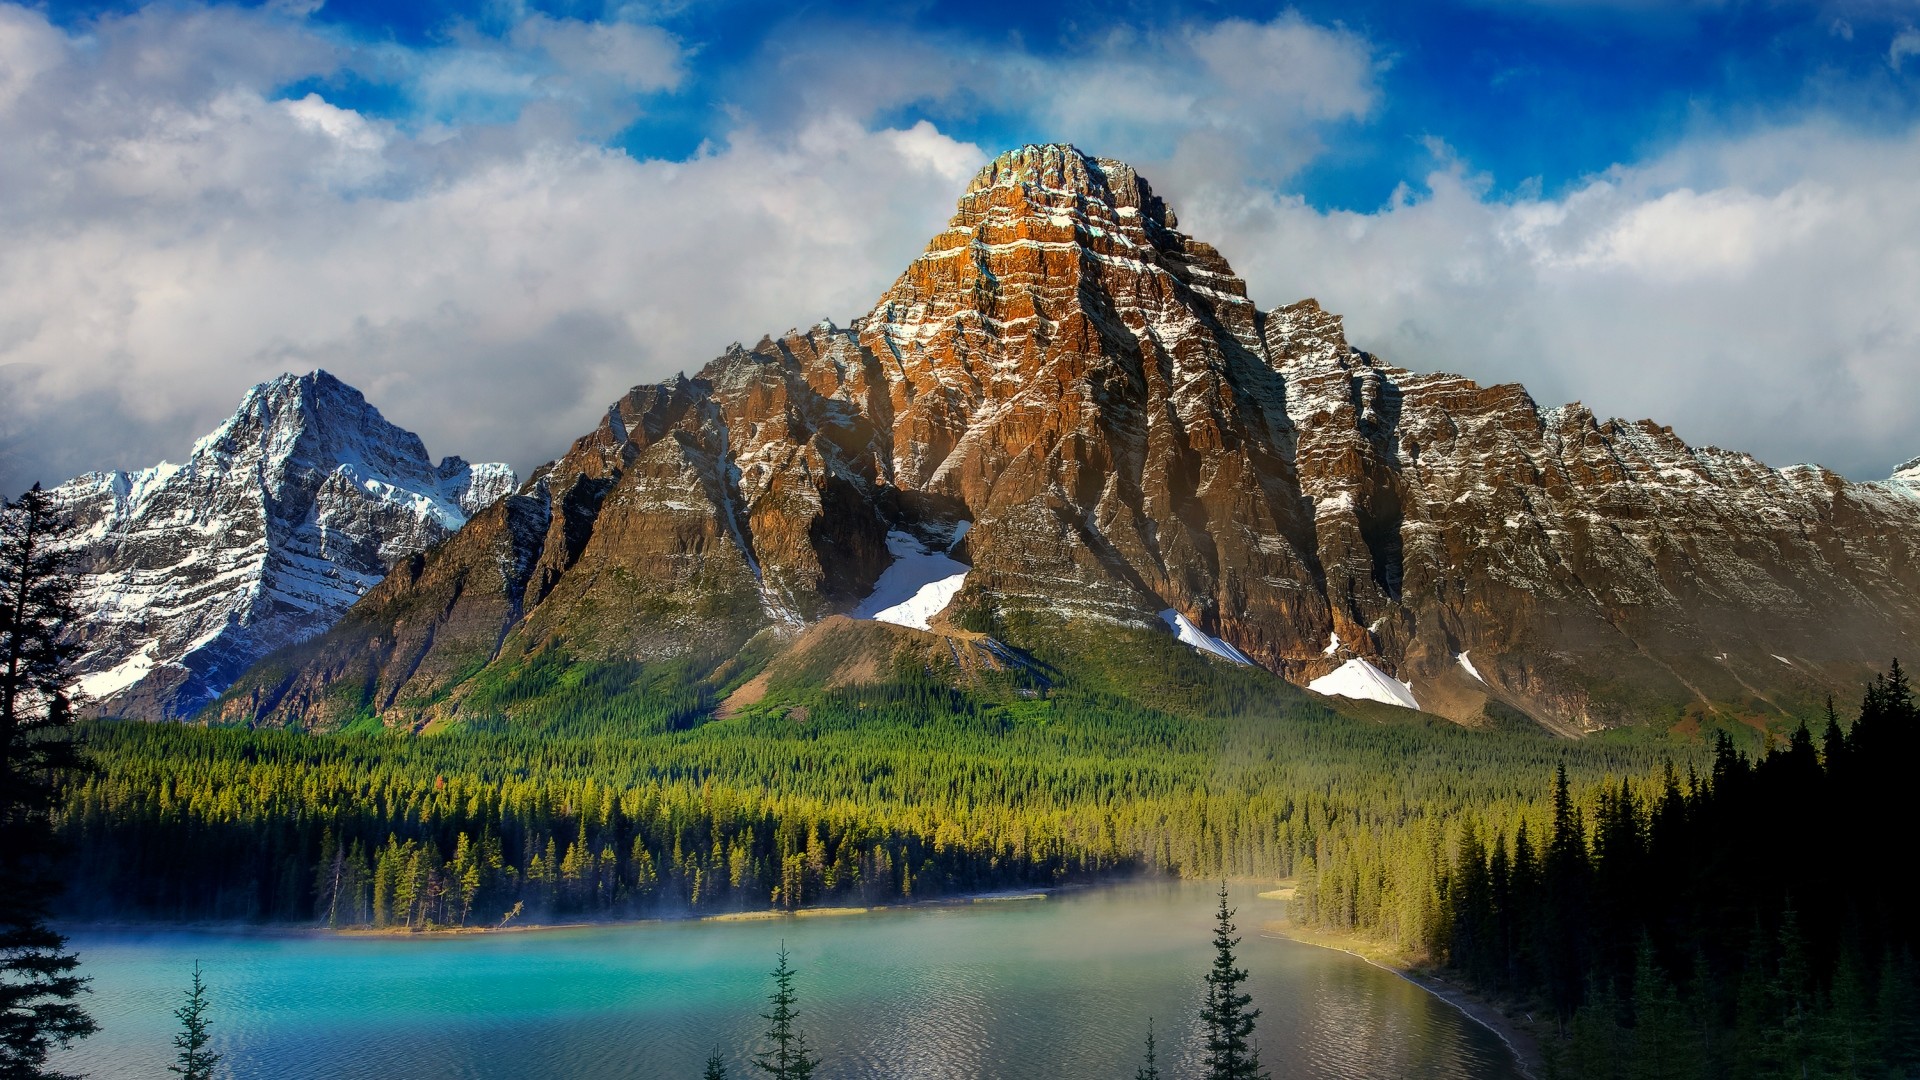 1920x1080 ... Background Full HD 1080p.  Wallpaper beautiful scenery,  mountains, lake, nature